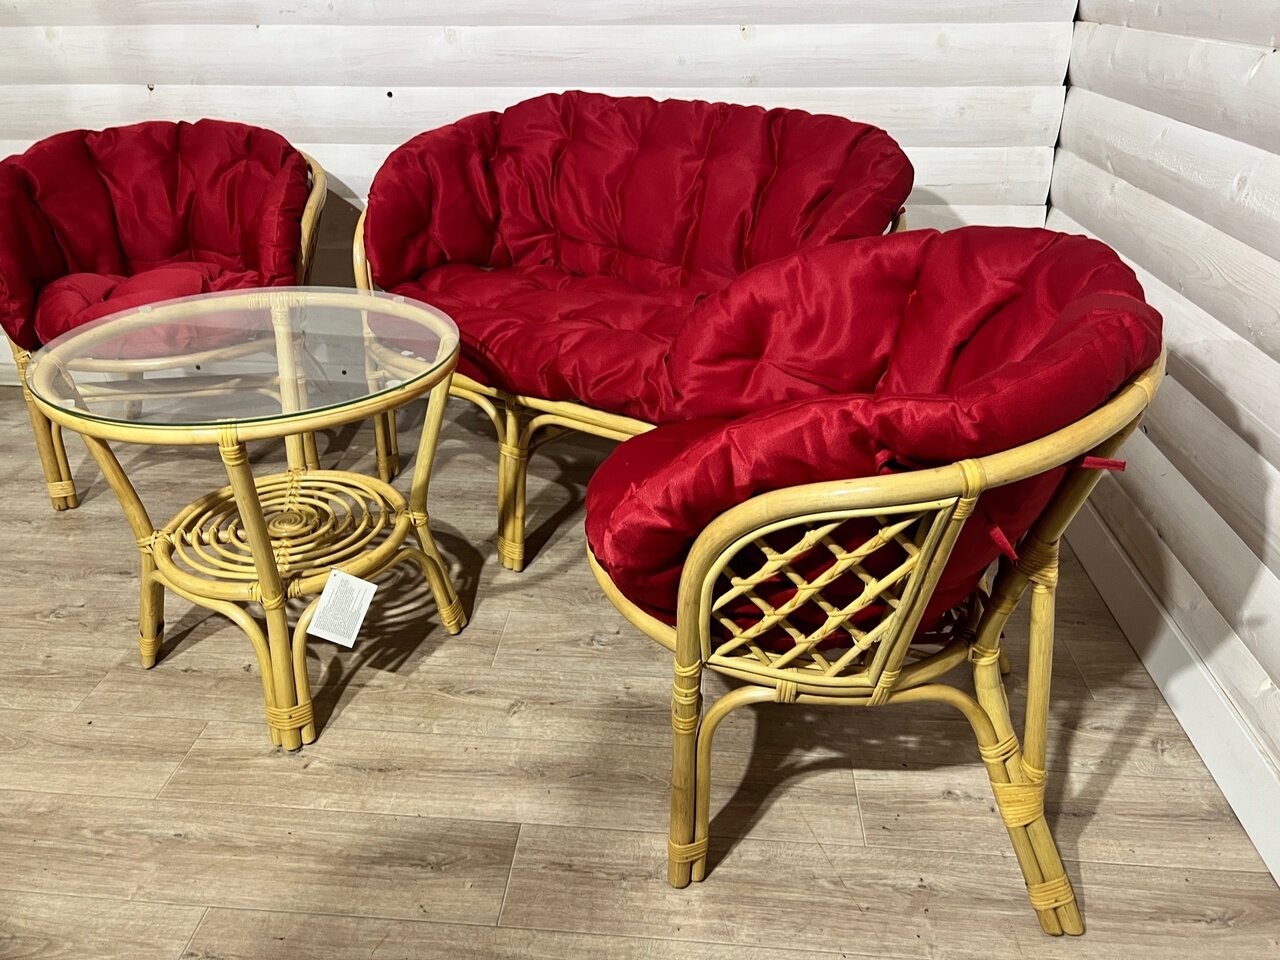 Мебель "Багама" - натуральная мебель из ротанга бук с подушками красного цвета